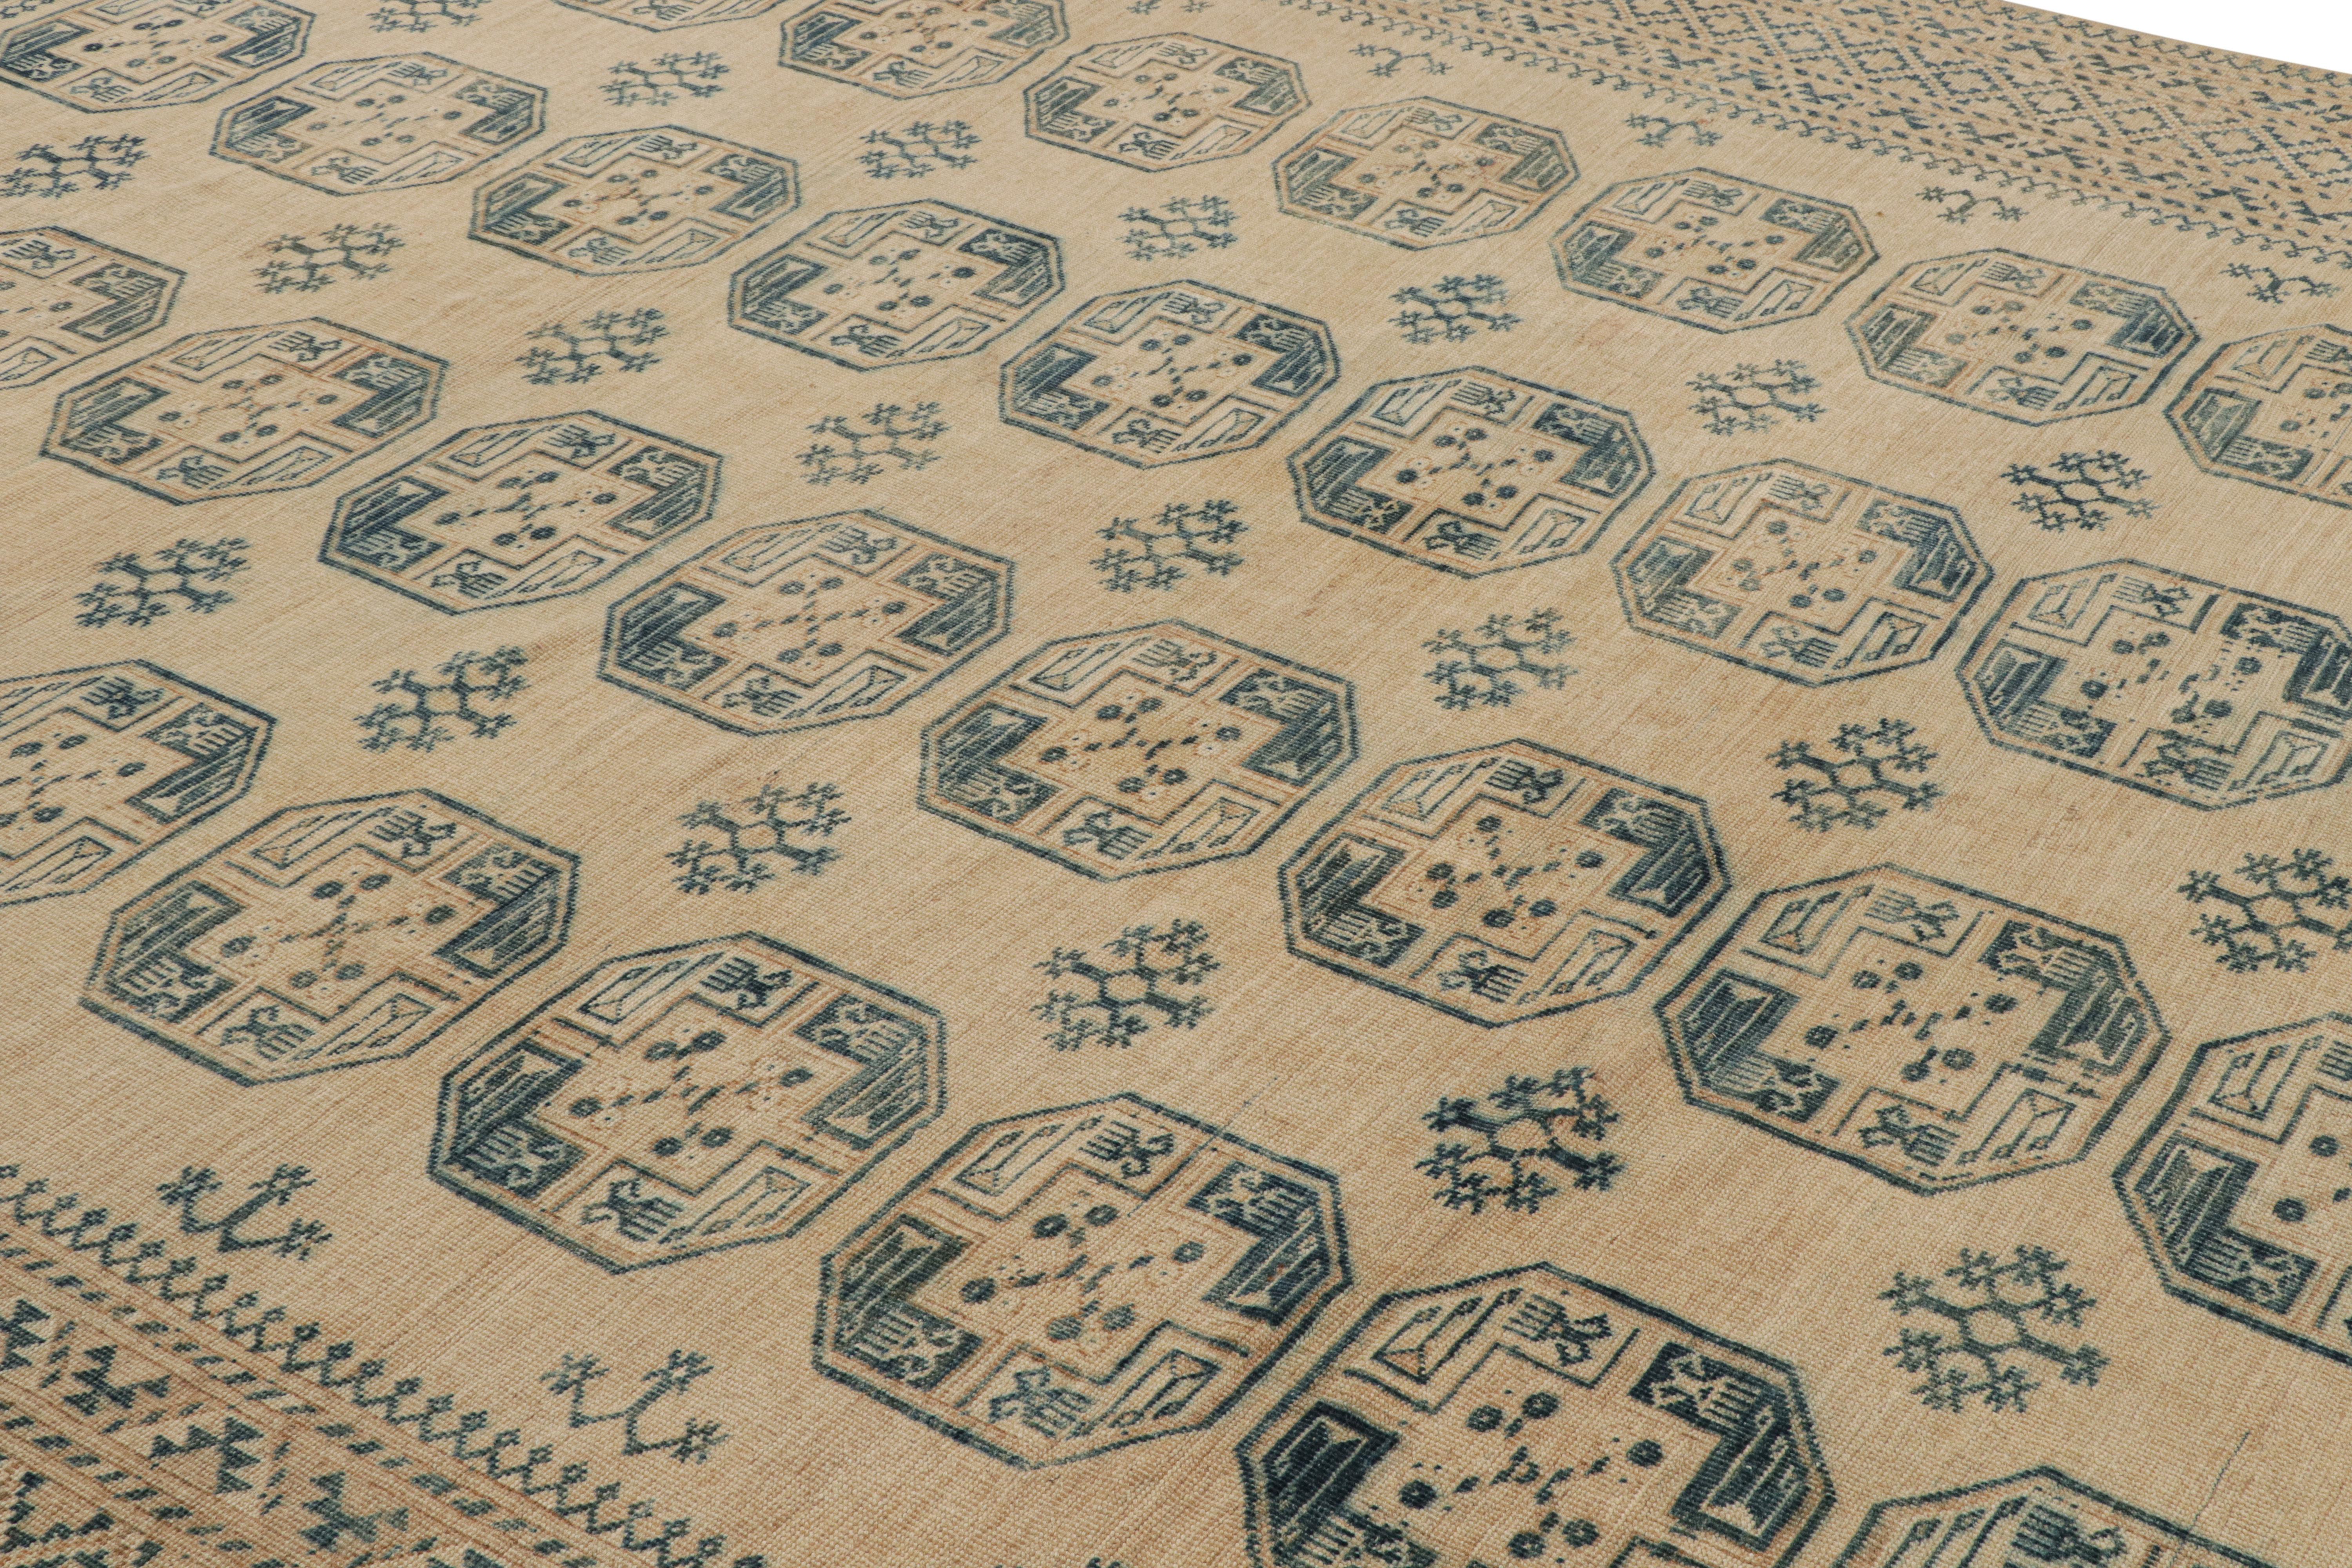 Noué à la main en laine et originaire de Turquie vers 1950-1960, ce tapis Ersari vintage 10x14 provient de la même provenance, une sous-tribu du peuple turkmène, souvent connue pour ses motifs de tapis tribaux plus distincts. 

Sur le Design : 

Les